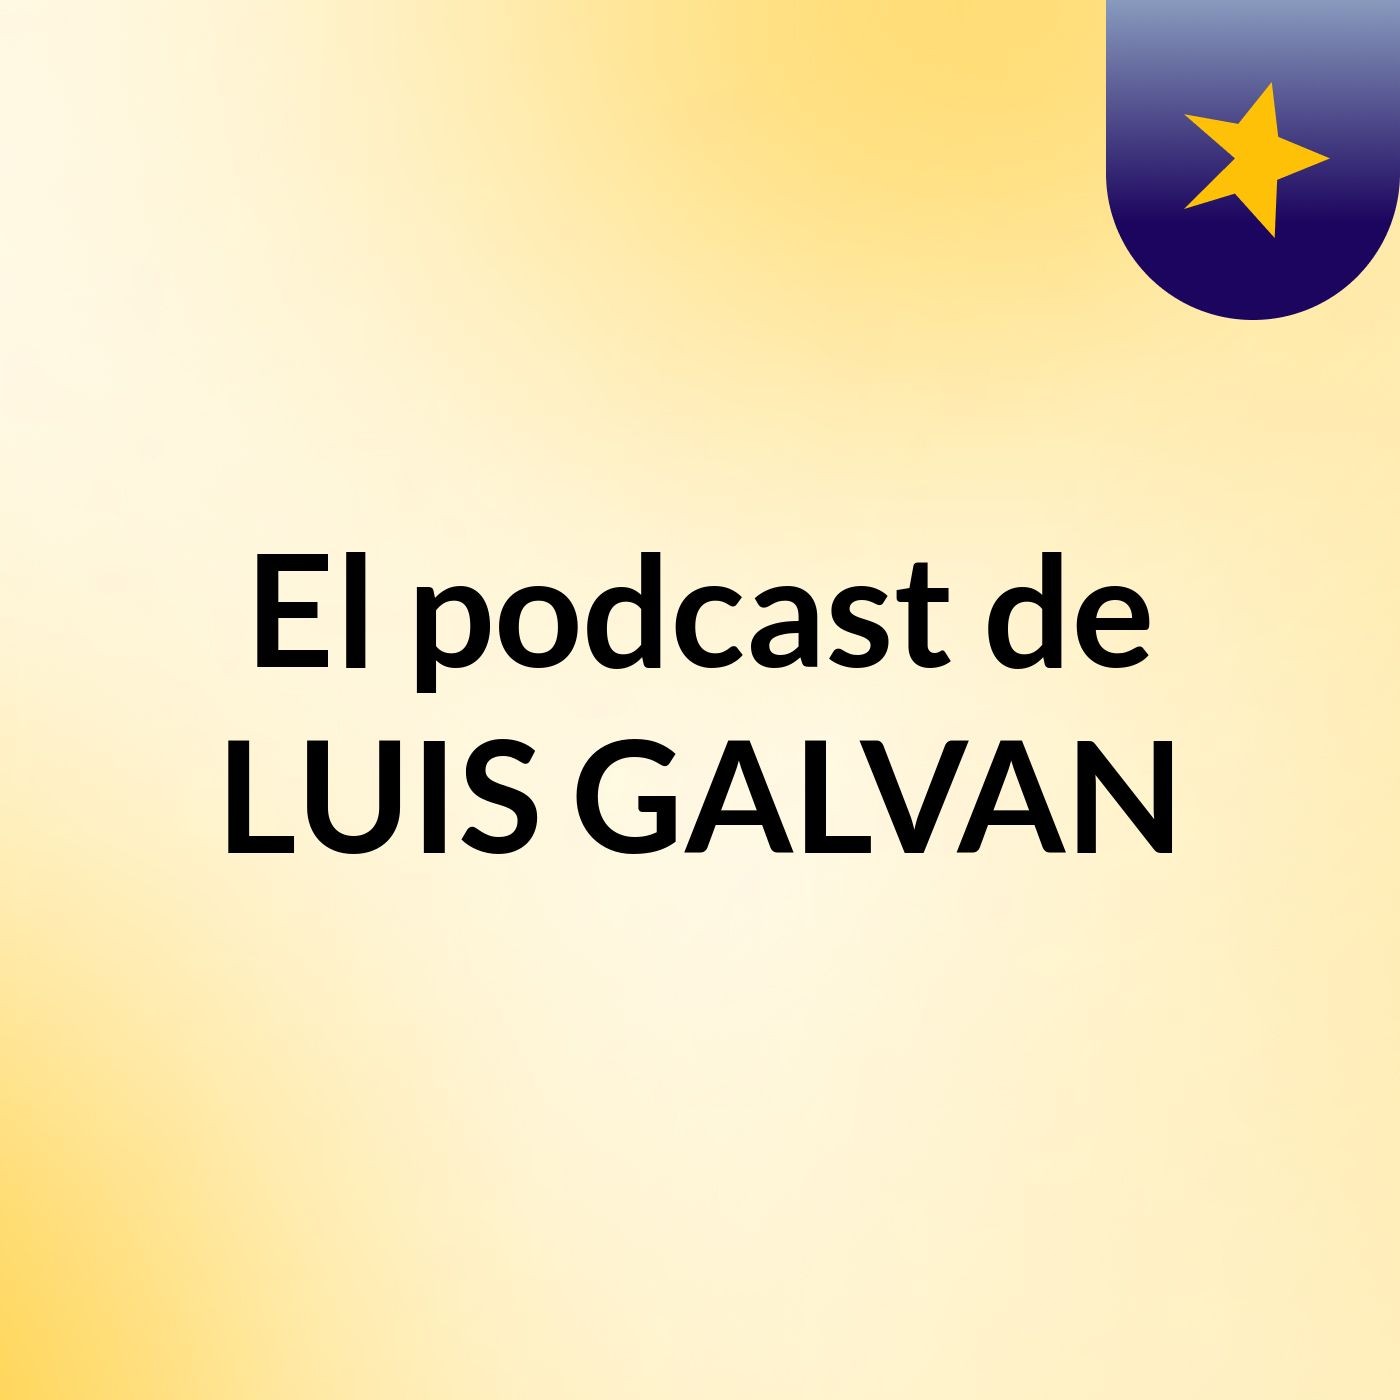 El podcast de LUIS GALVAN